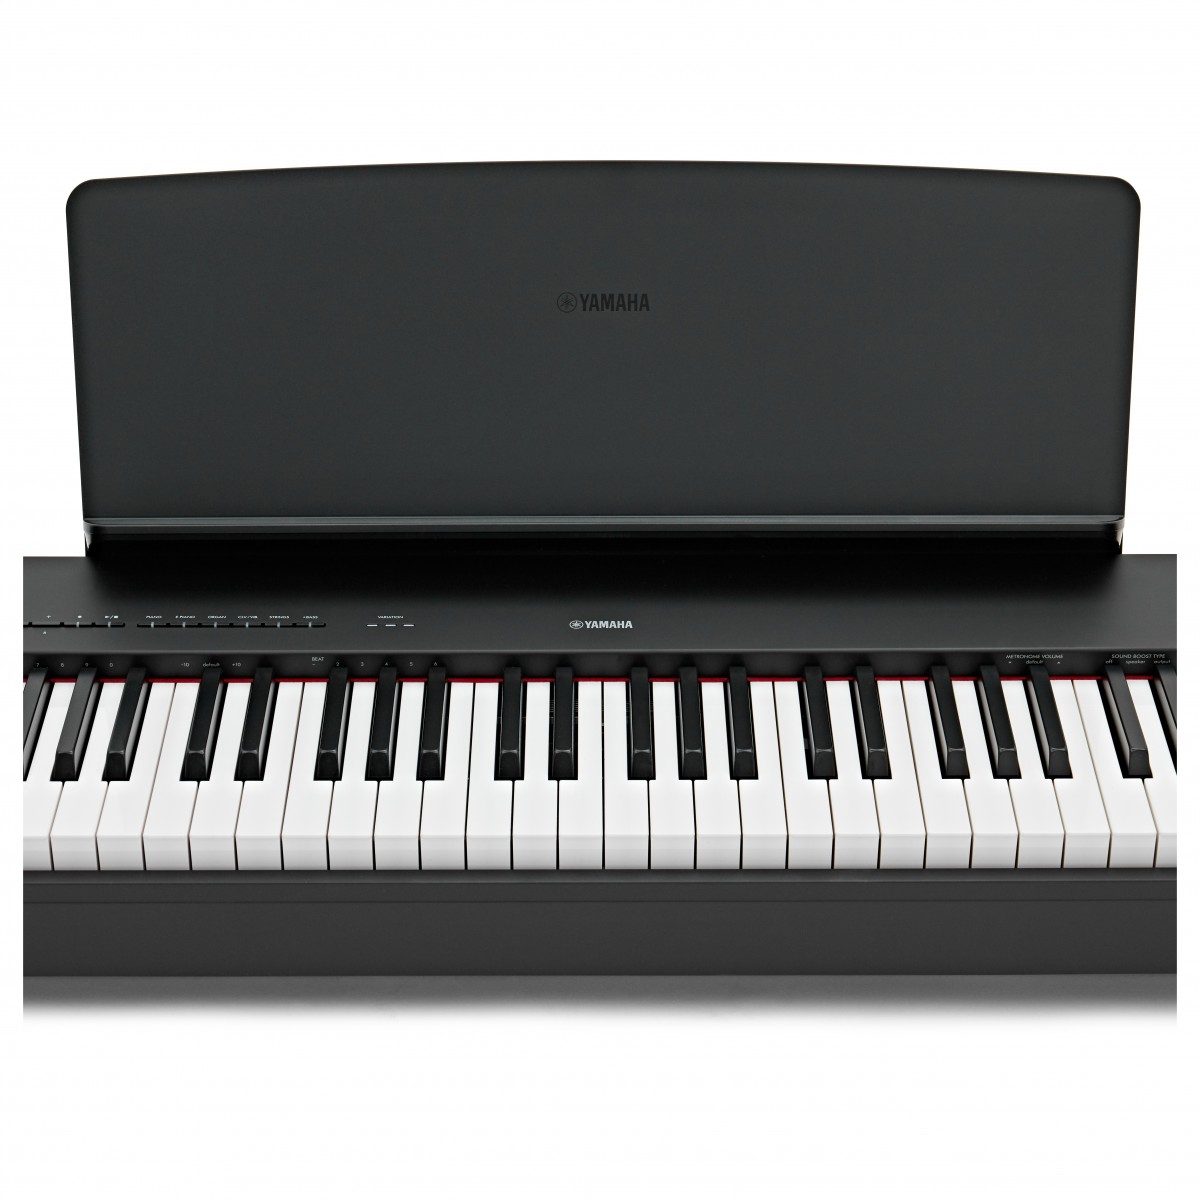 Цифровое пианино Yamaha P-225B